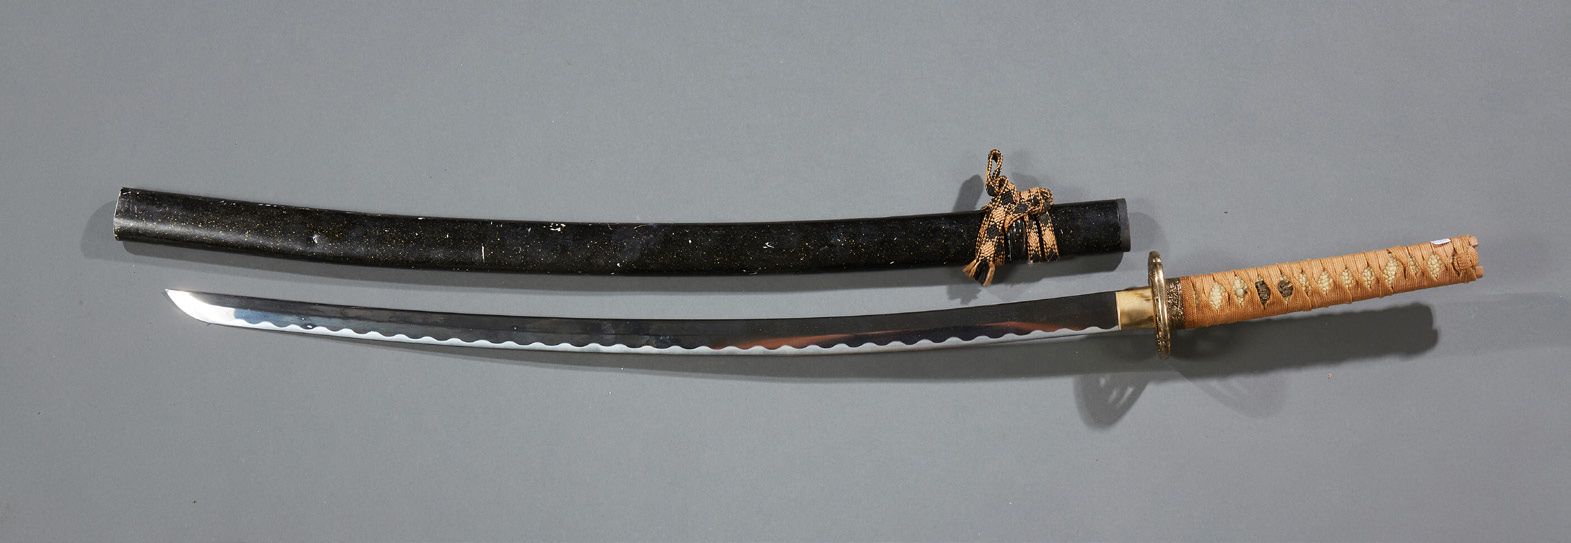 JAPON 钢制剑身和黄貂鱼手柄的剑。涂漆木质剑鞘。
现代作品。
长度：147厘米